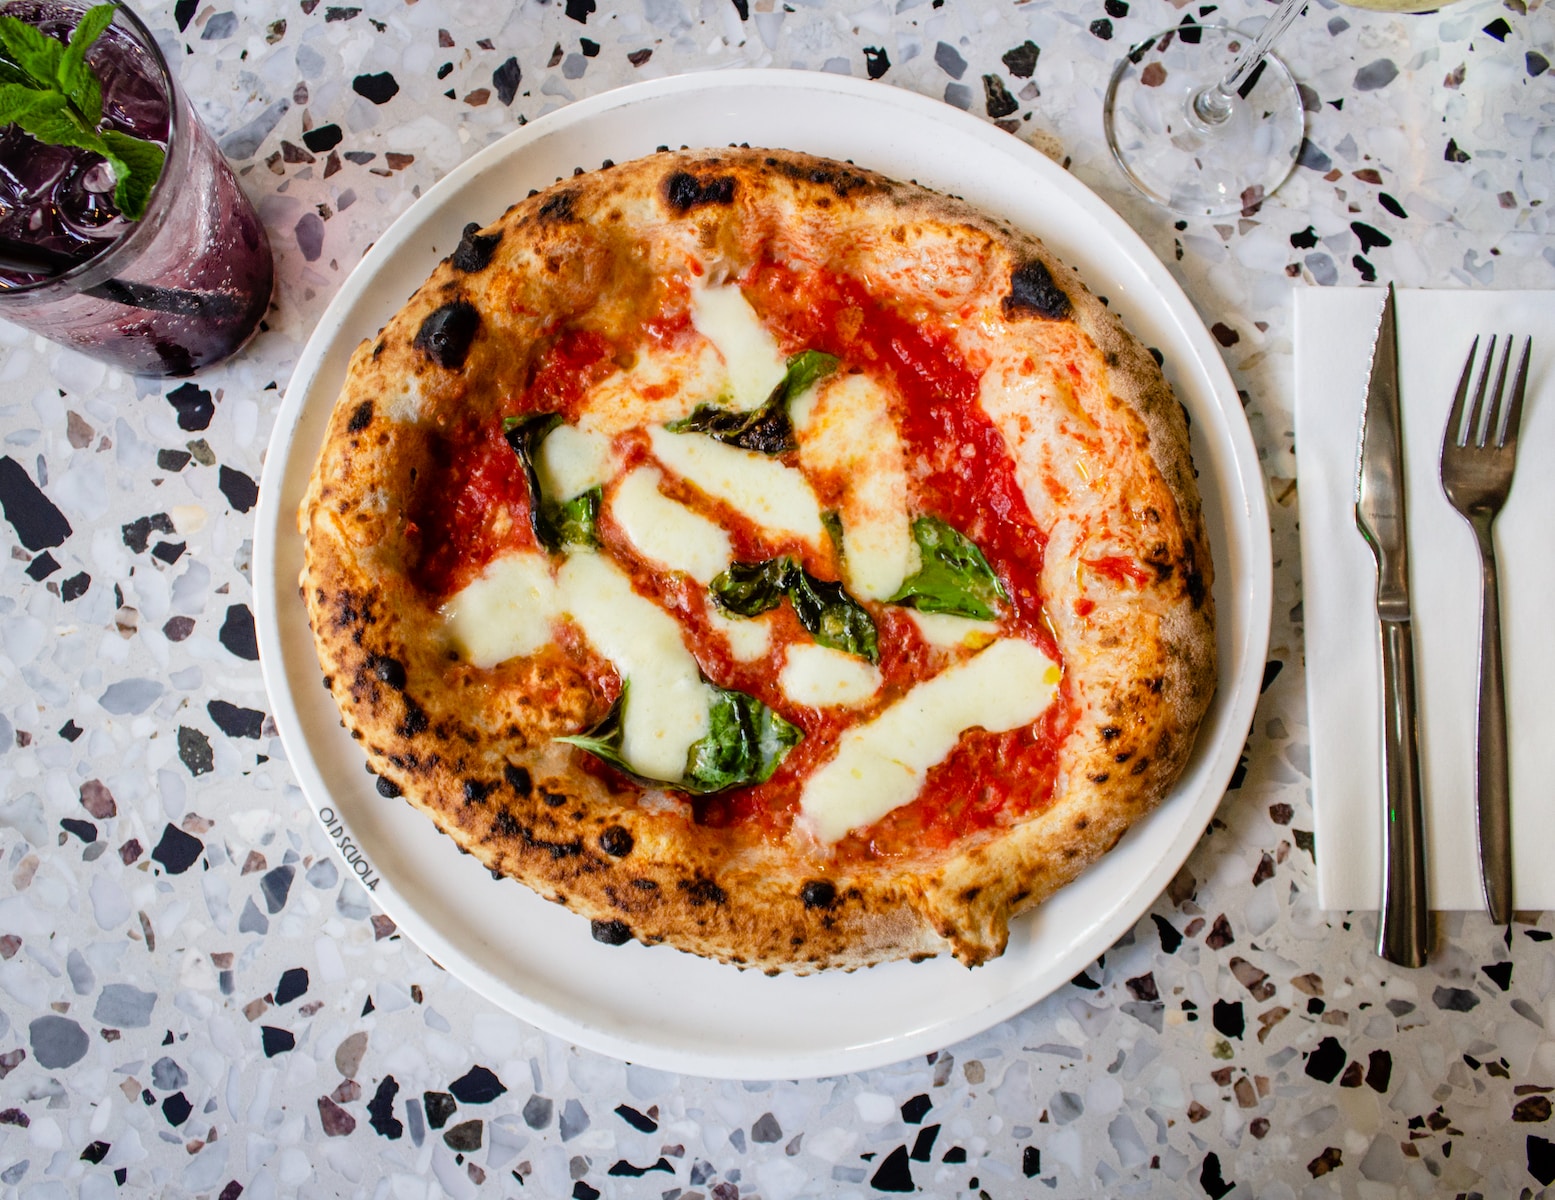 Które restauracje serwują najlepszą pizzę w twoim mieście?